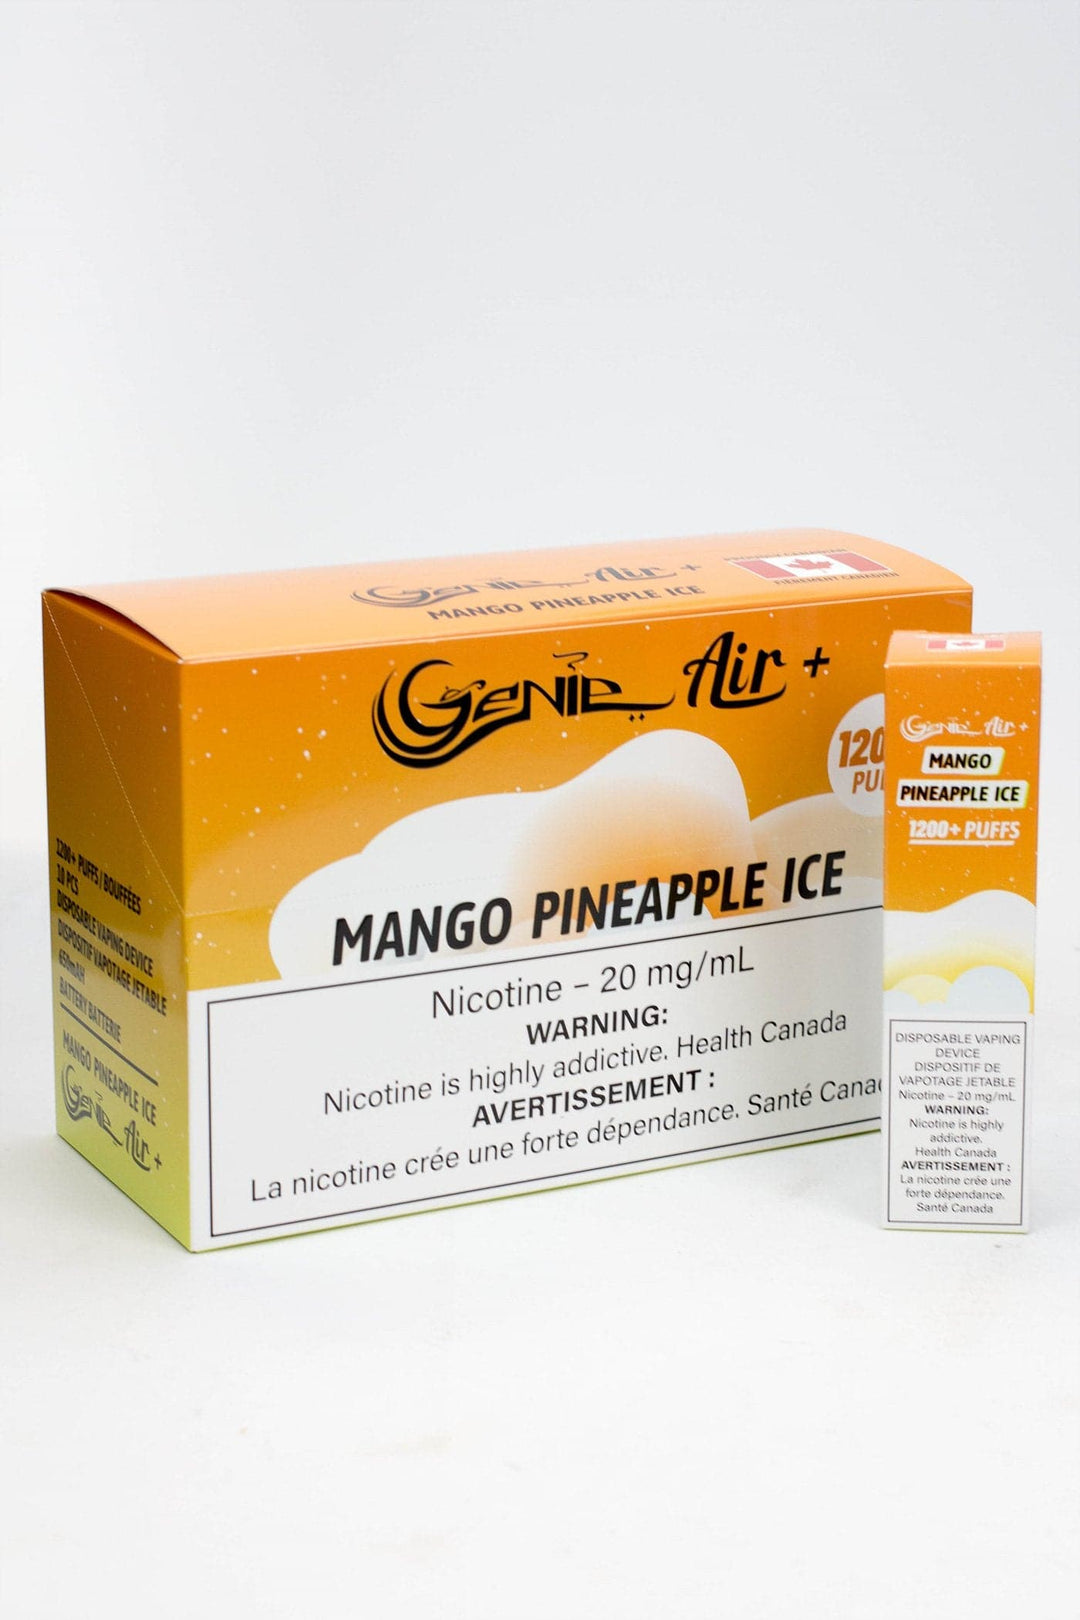 Genie Air+ disposable 1200 Puff Pod 20 mg/mL